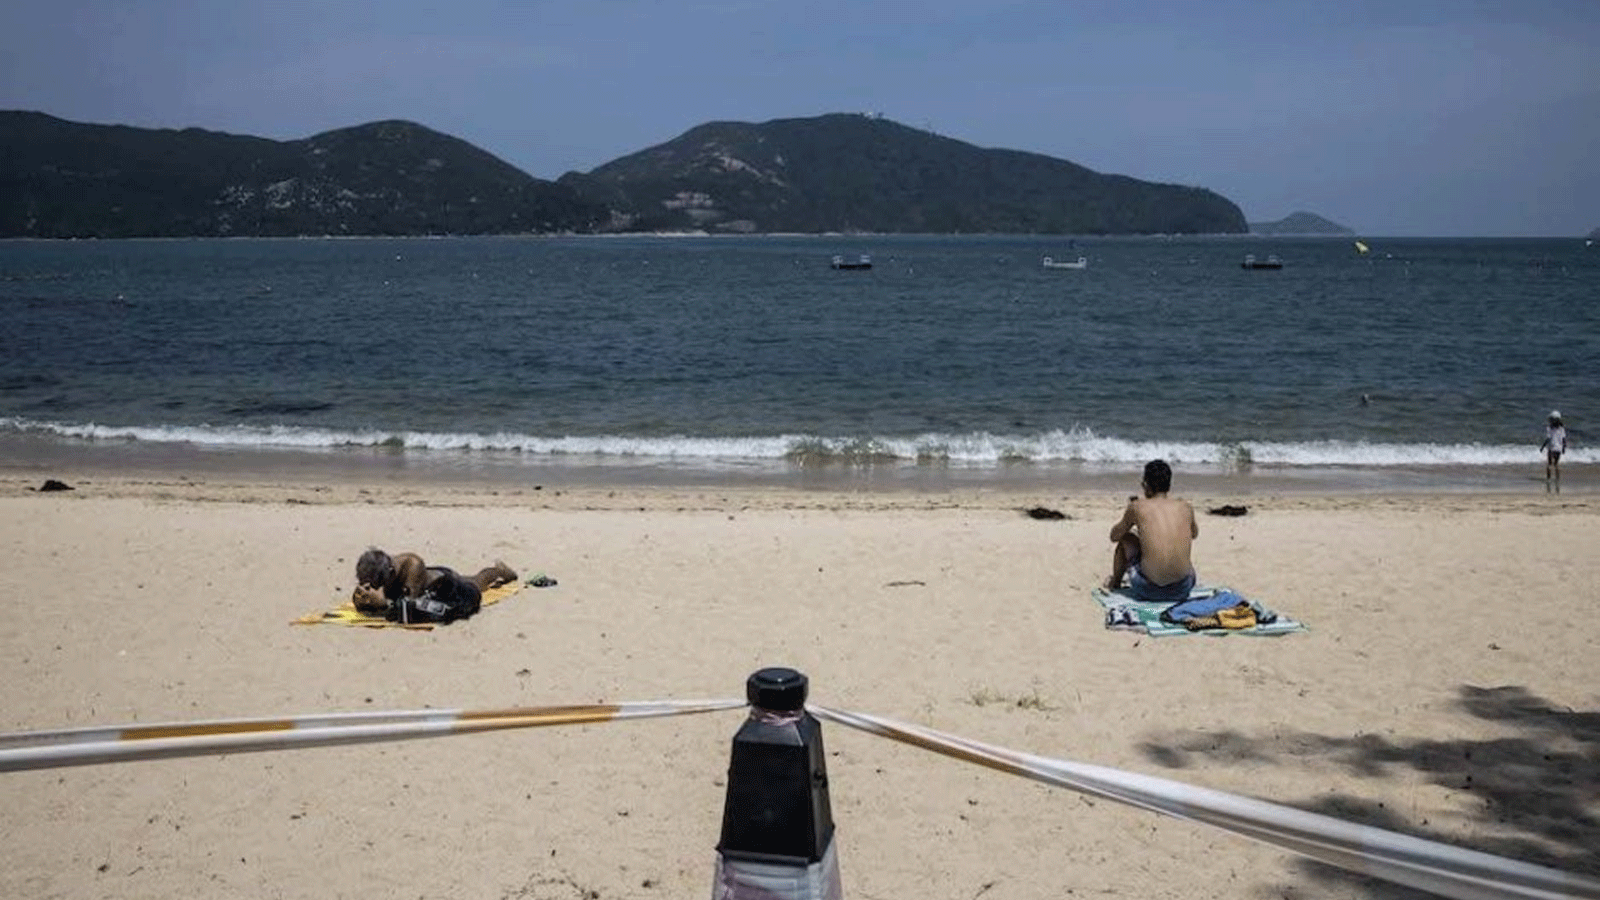 الناس يظهرون على الشاطئ في ماكاو\ الصين